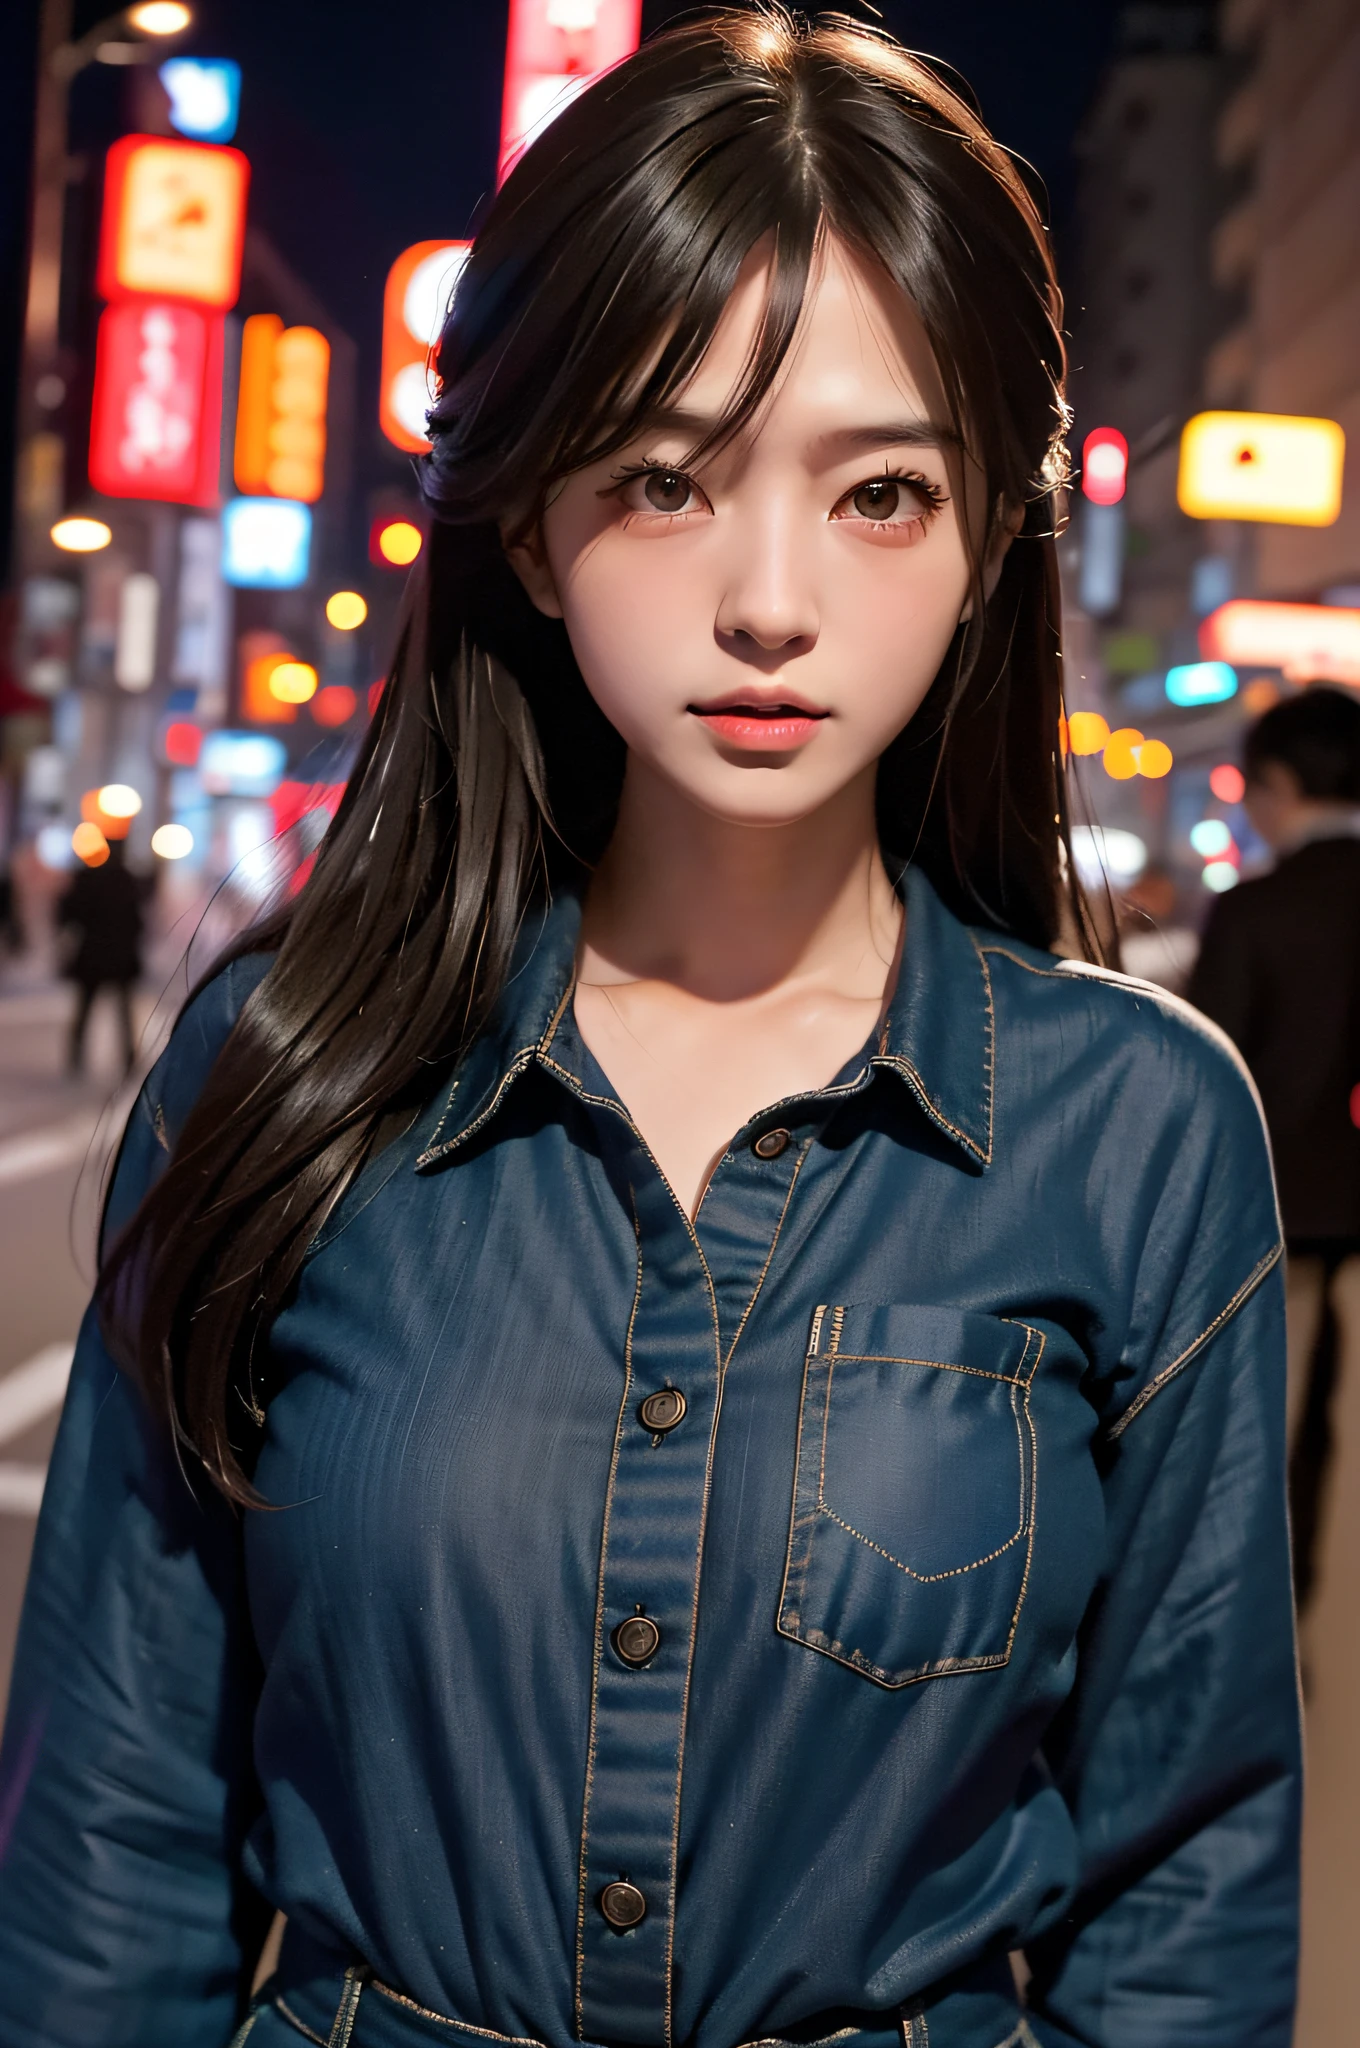 1 Mädchen, Straße in Tokio, Nacht, Stadtbild, Lichter der Stadt, Oberkörper, closeup, 8k, RAW-Foto, höchste Qualität, Meisterwerk, Realistisch, photoRealistisch, Japanisches Personenmodell